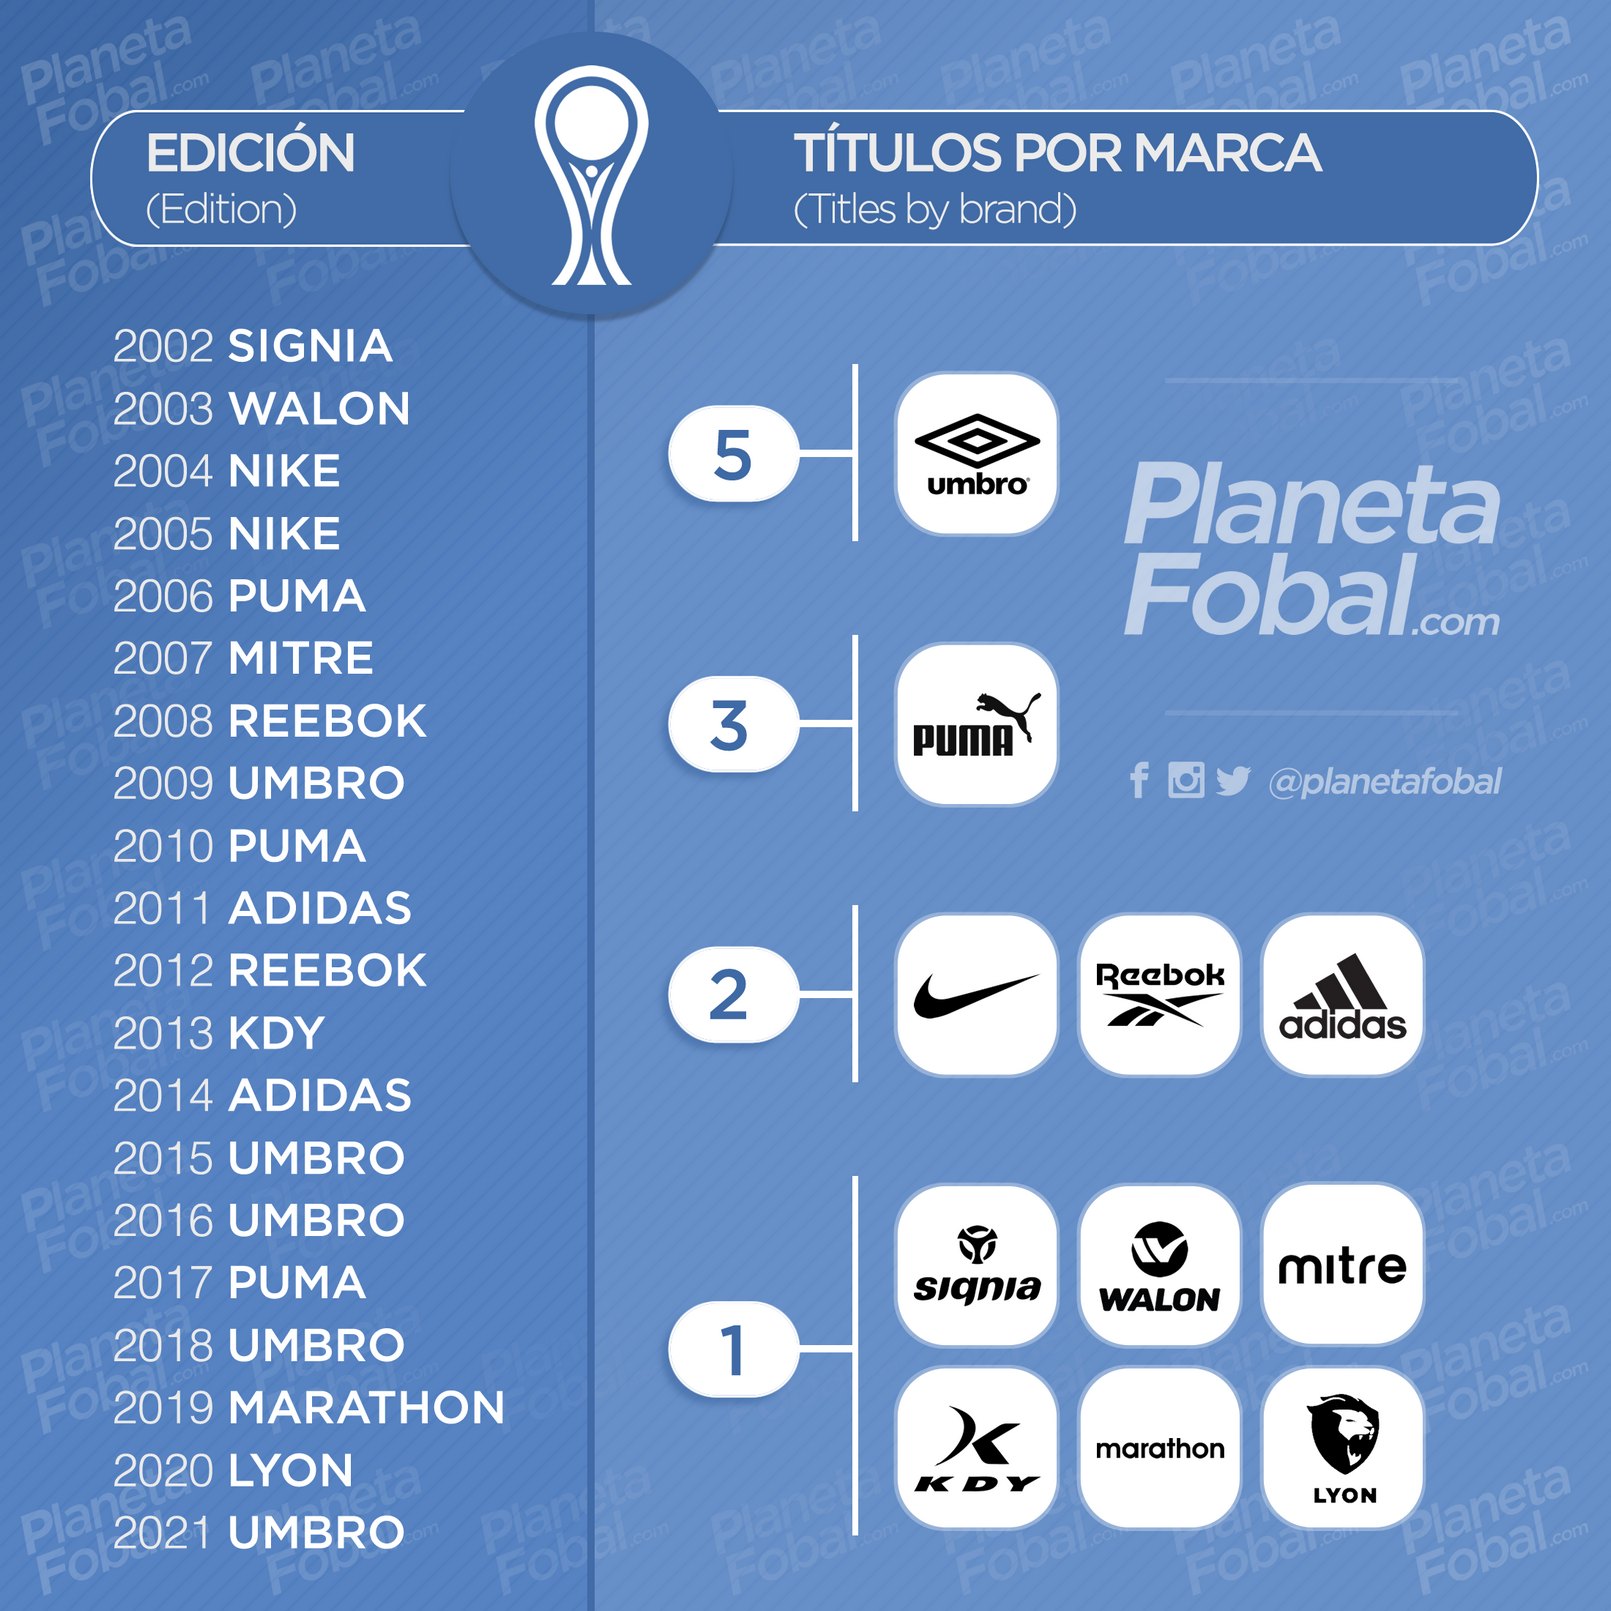 Cantidad de títulos por marca deportiva en la Copa CONMEBOL Sudamericana | @planetafobal